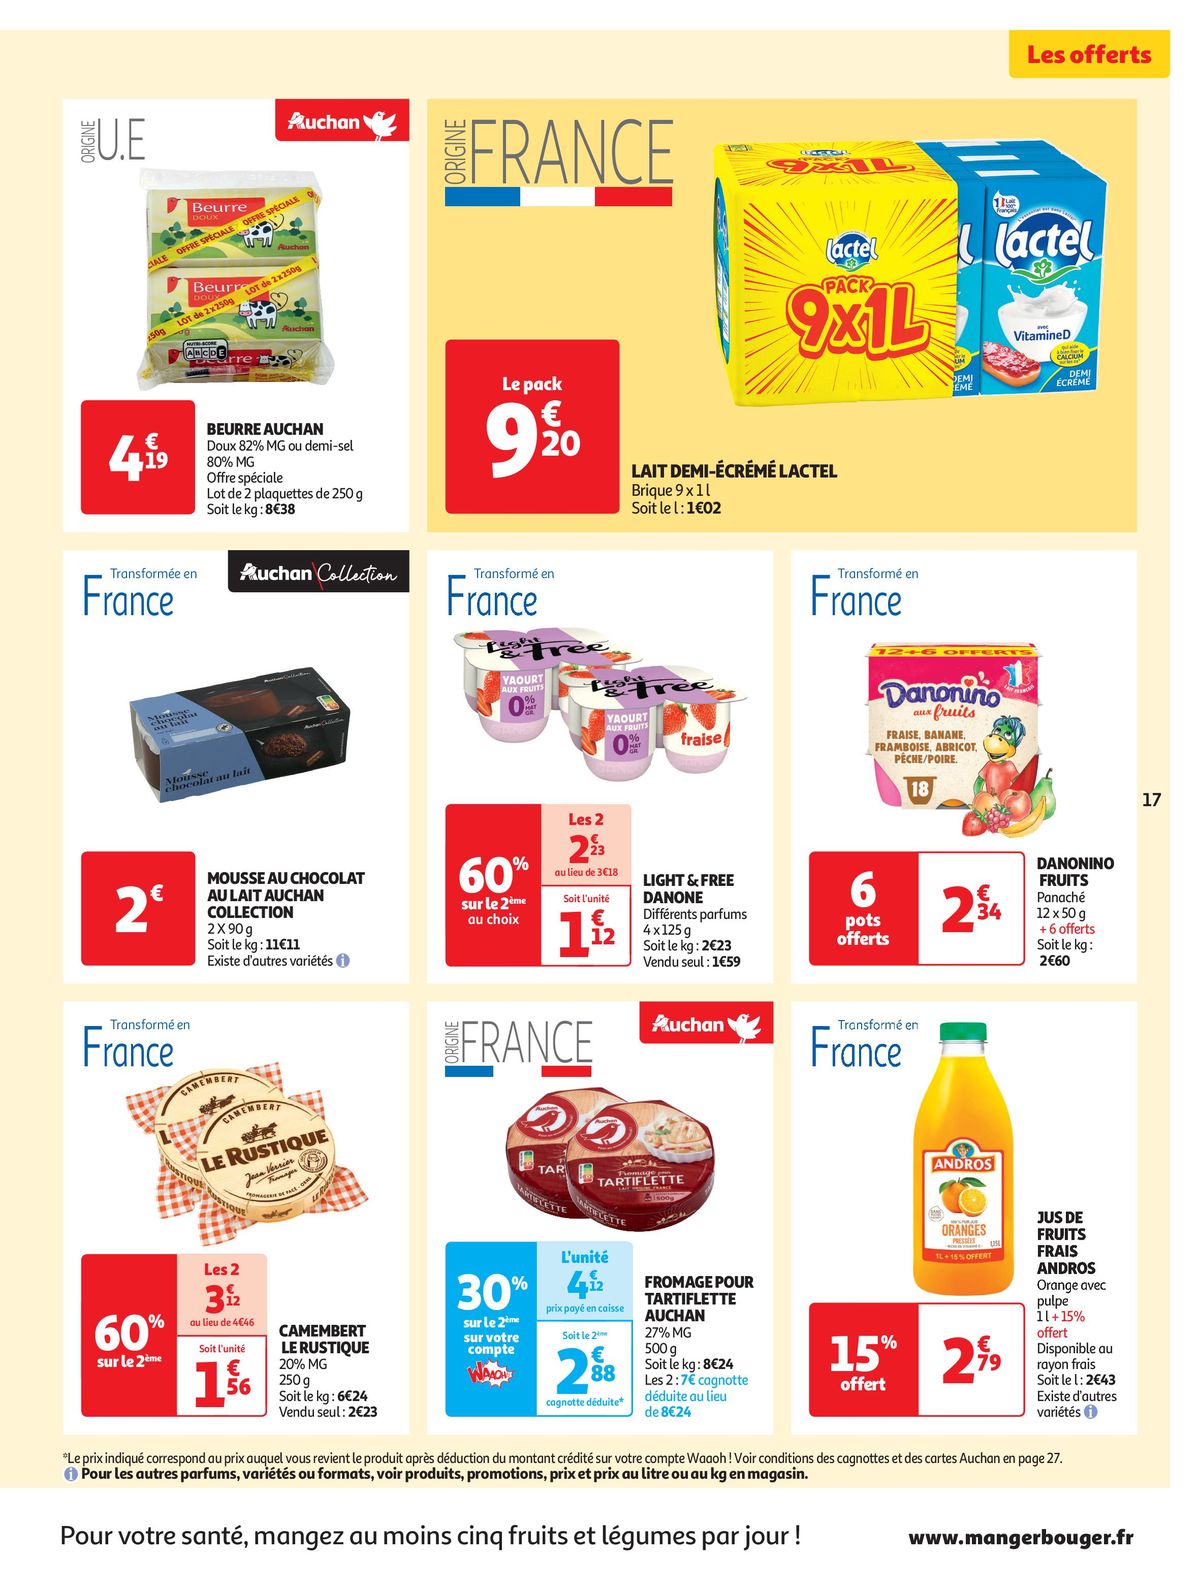 Catalogue Spécial Cuisine Gourmane dans votre supermarché, page 00017